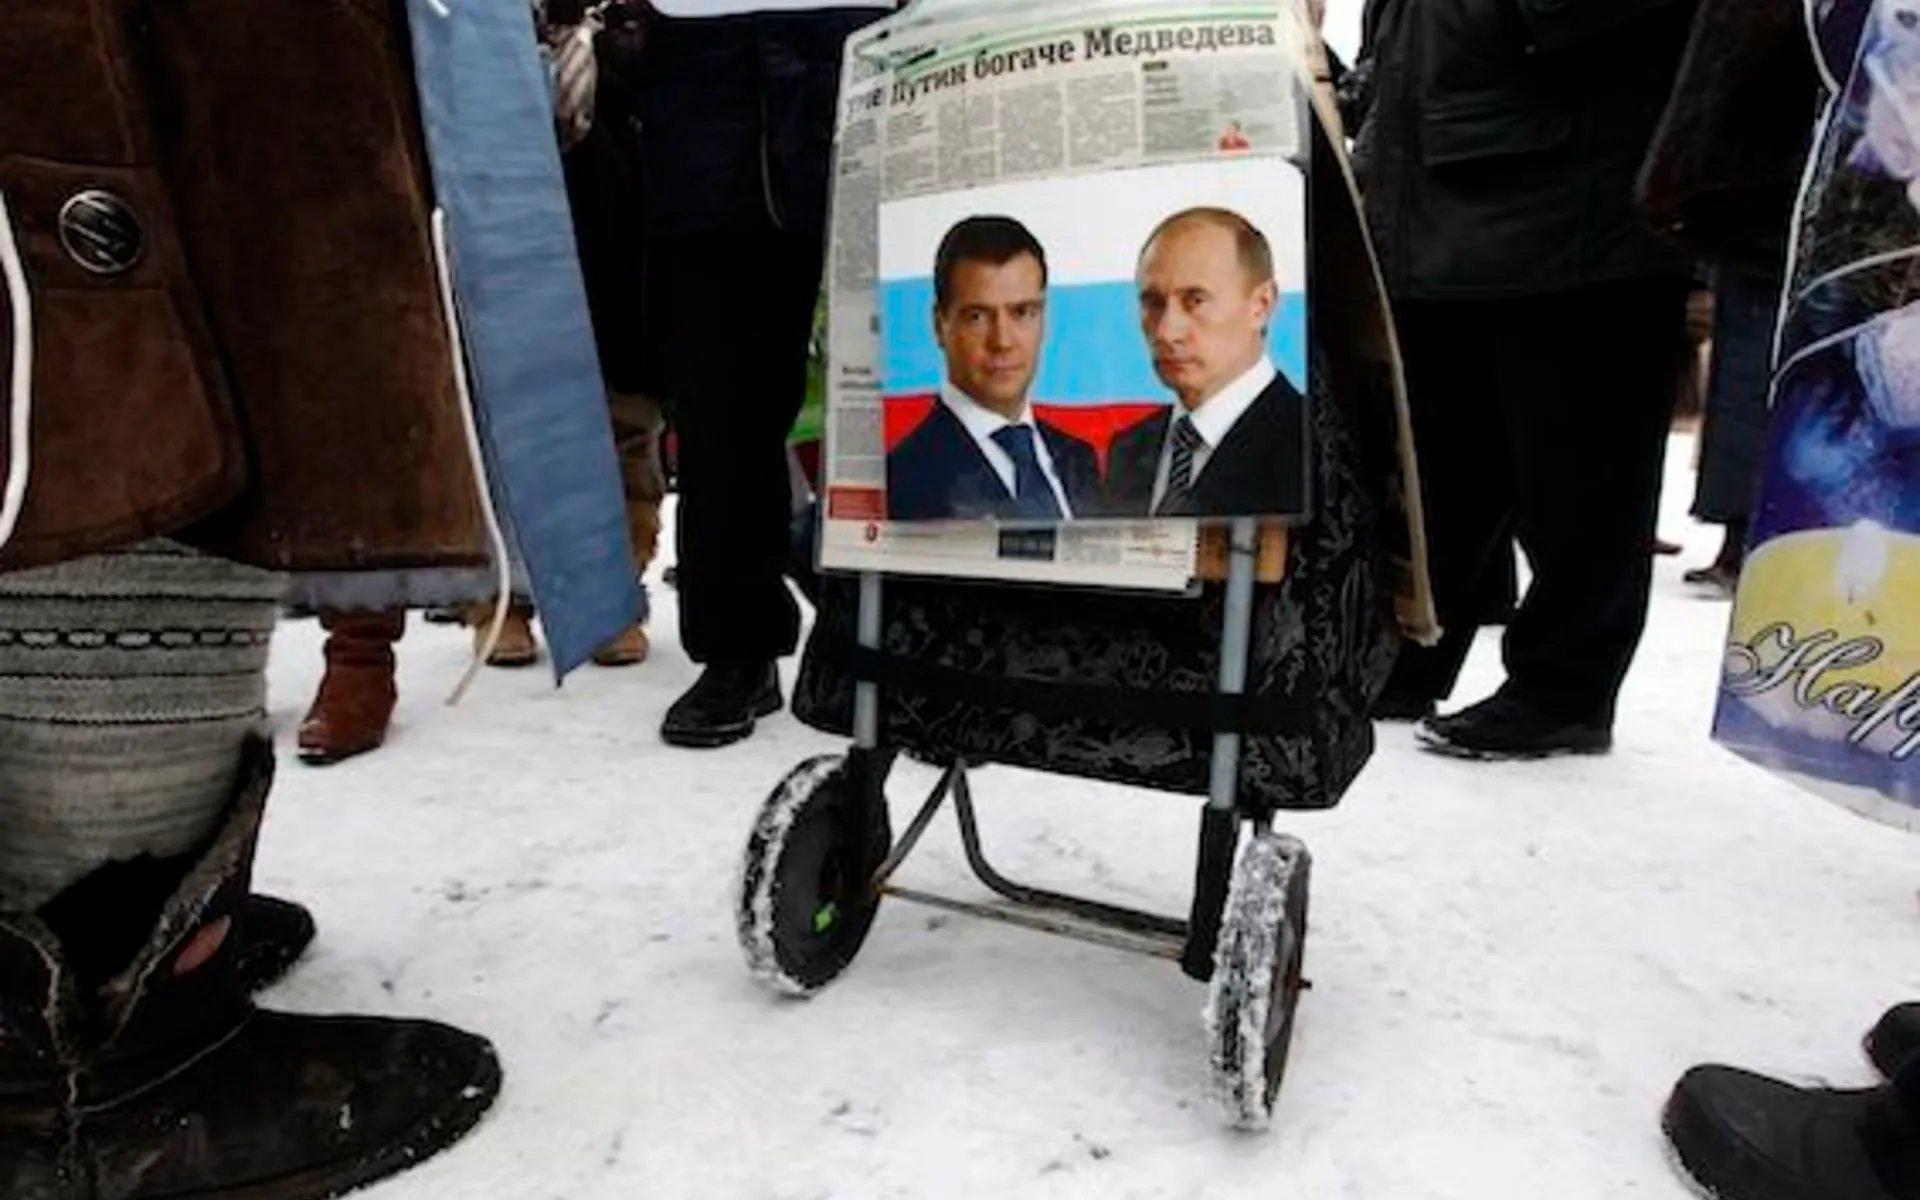 Медведева из Георгиевского зала «вырезали» так же тщательно, как антипутинские плакаты из репортажей с Болотной площади